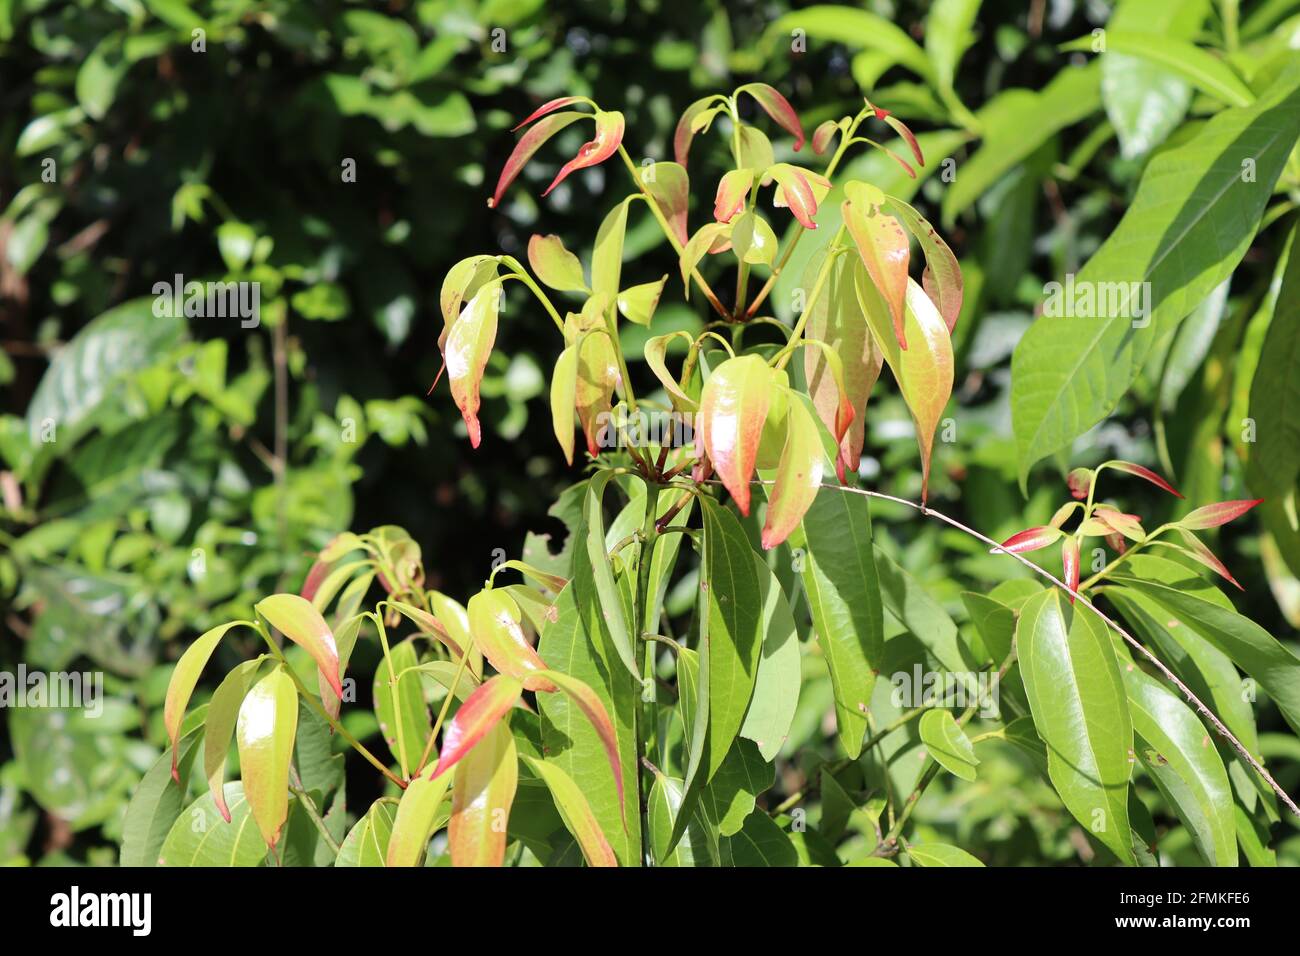 Cannelle sri lankaise, très célèbre pour ses épices, cette cannelle au soleil pleine de feuilles vertes. Banque D'Images